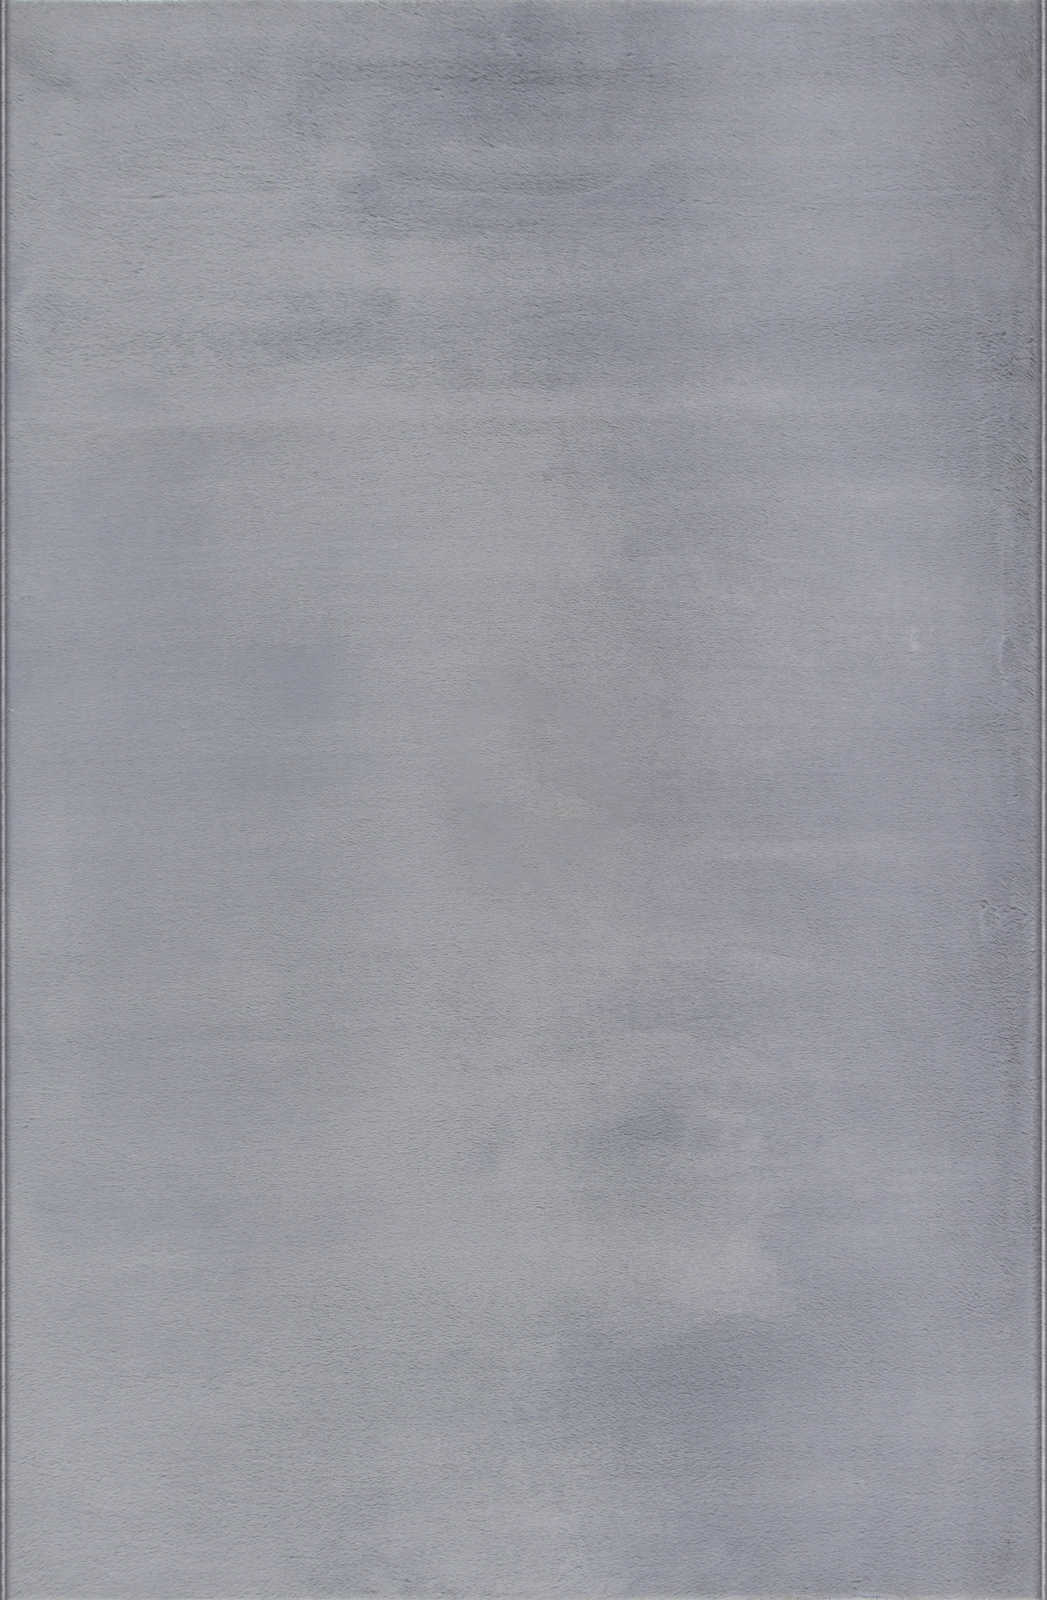             Angenehmer Hochflor Teppich in sanften Grau – 140 x 70 cm
        